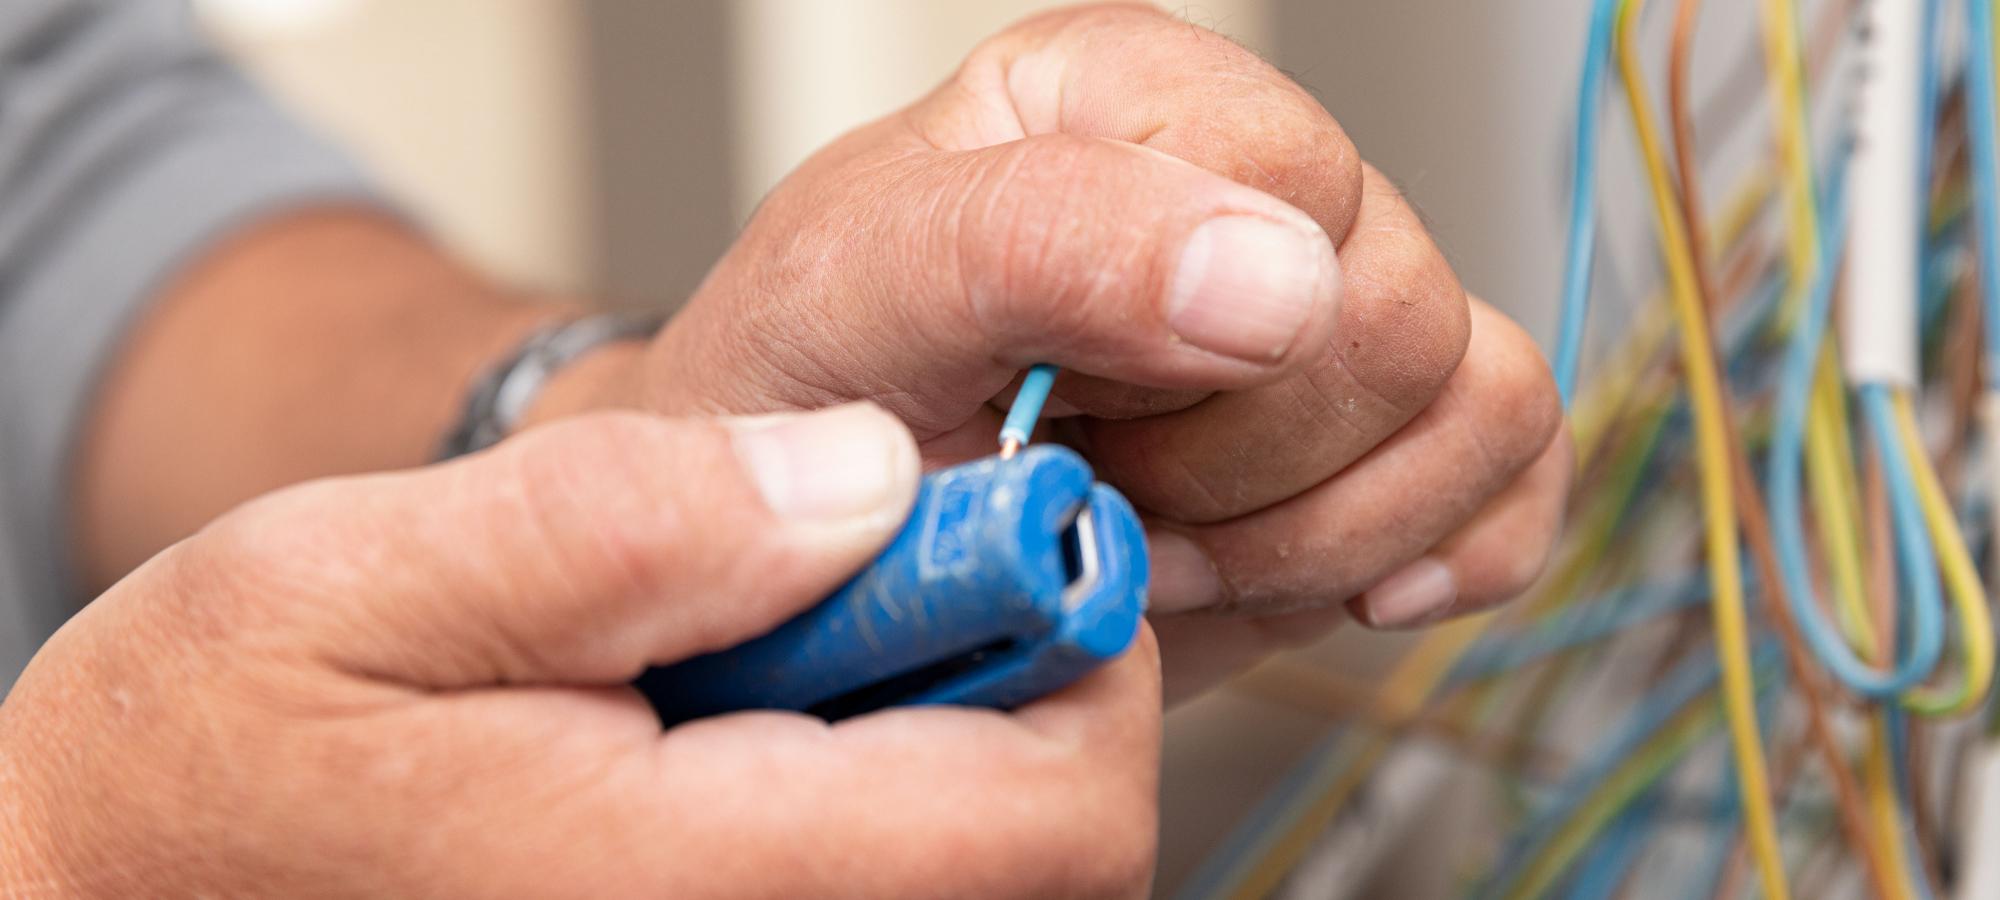 Bildausschnitt mit zwei Händen eines Elektromeisters beim abisolieren eines blauen Kabels mittels Abisolierzange.